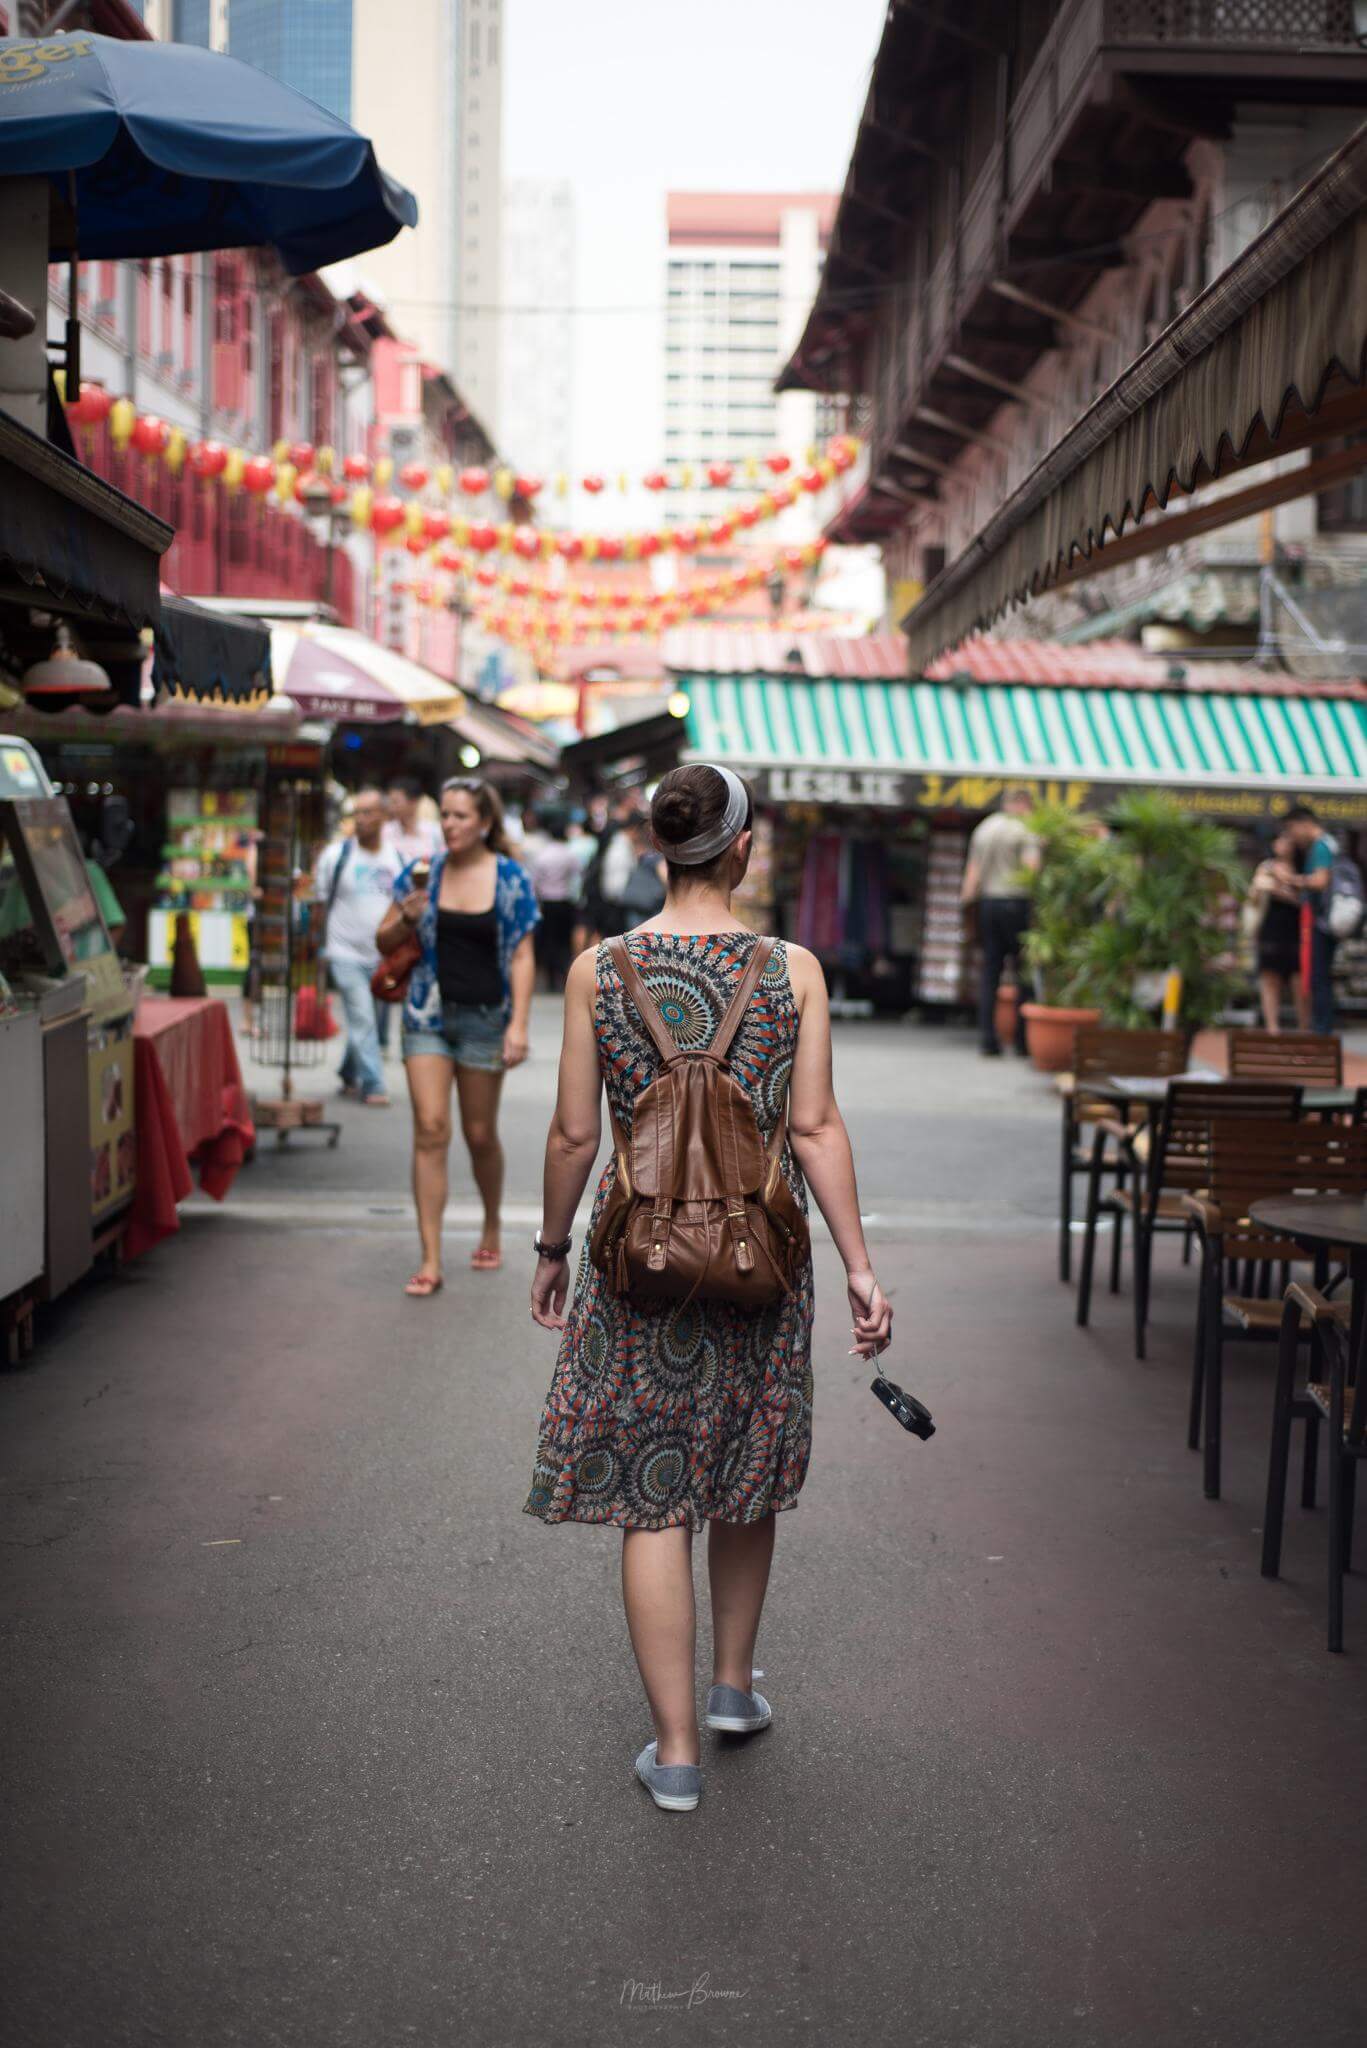 photos of Singapore - Chinatown